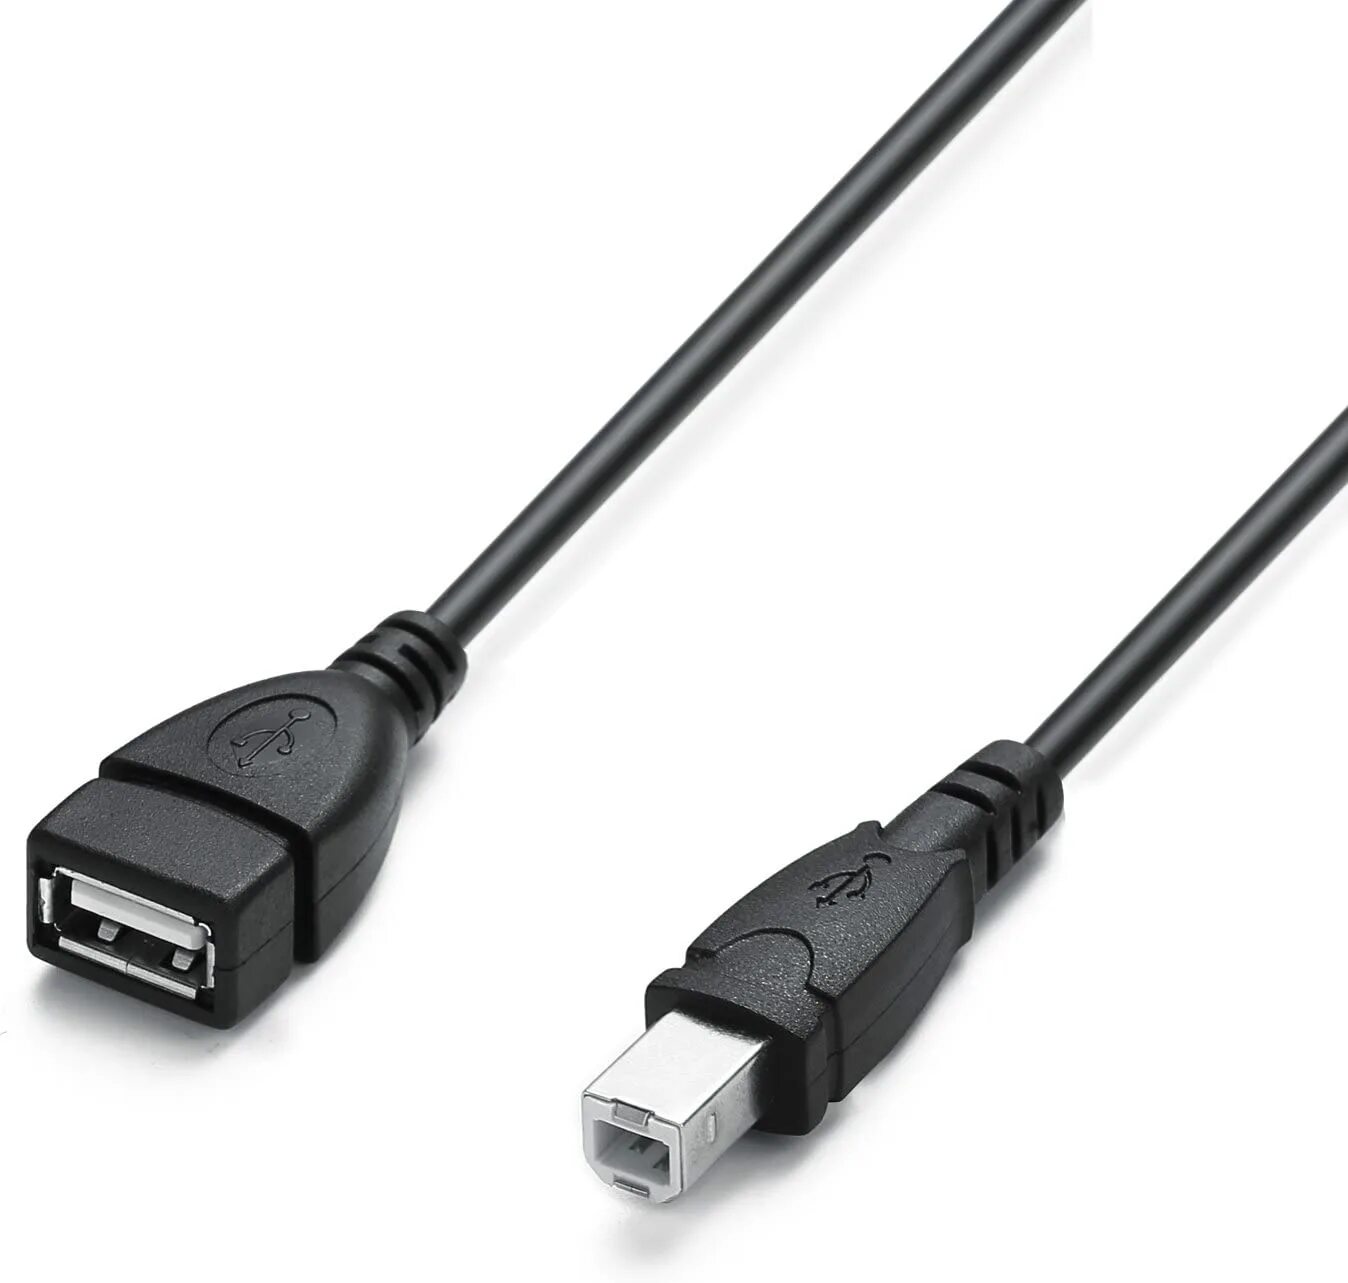 Usb type a купить. Кабель USB 2.0 A-B. USB C К USB Type b 2,0 кабель. USB 2.0 A female - USB B male. Cable USB 2.0 A male to USB 2.0 A male.